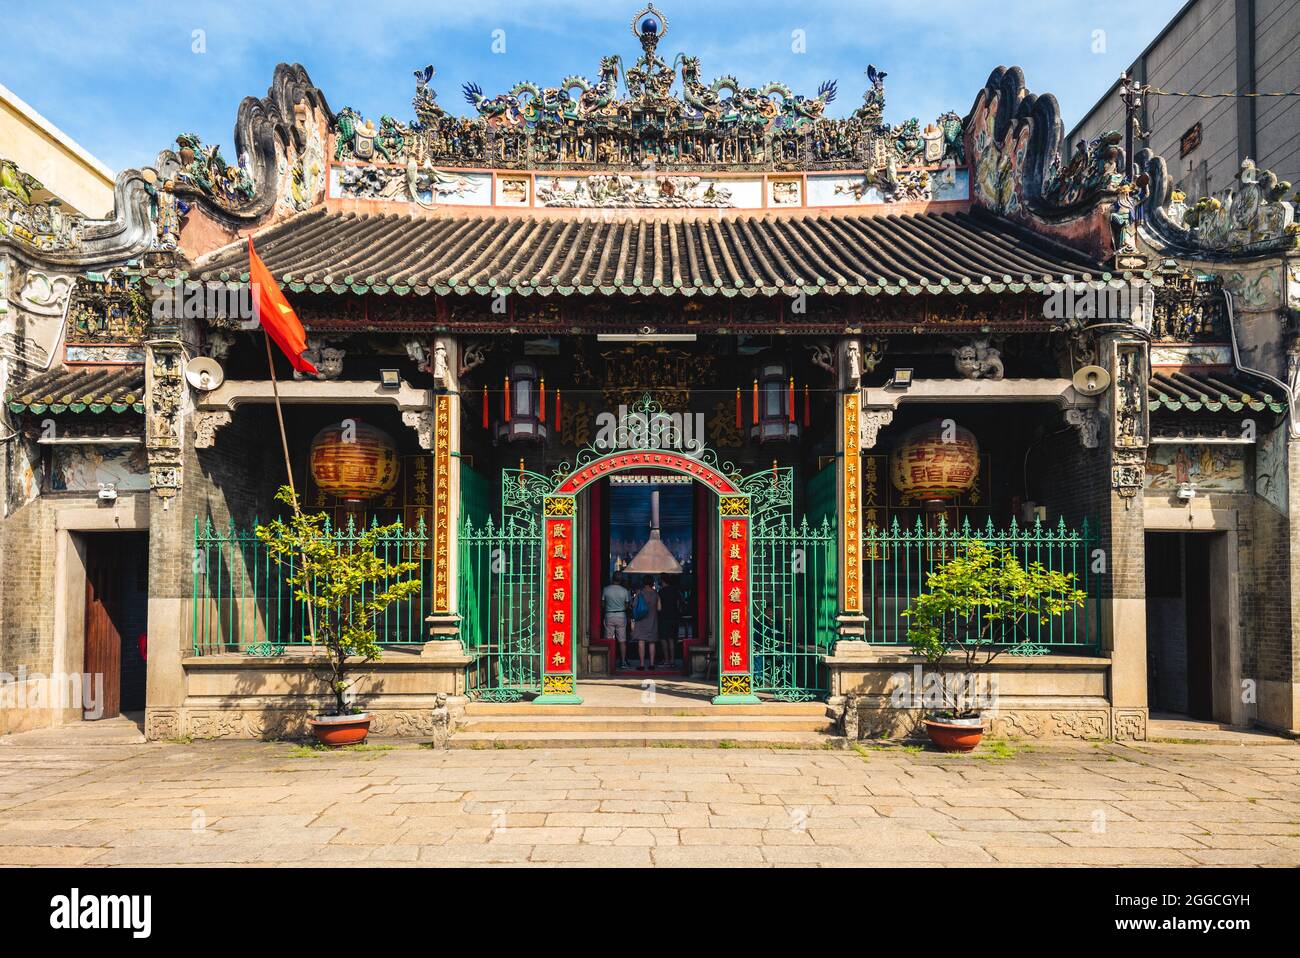 2 janvier 2017 : Temple BA Thien Hau, temple céleste de la reine, dans le district de Cholon de saigon, Vietnam. C'est un temple bouddhiste construit en 1760 dédié à Banque D'Images